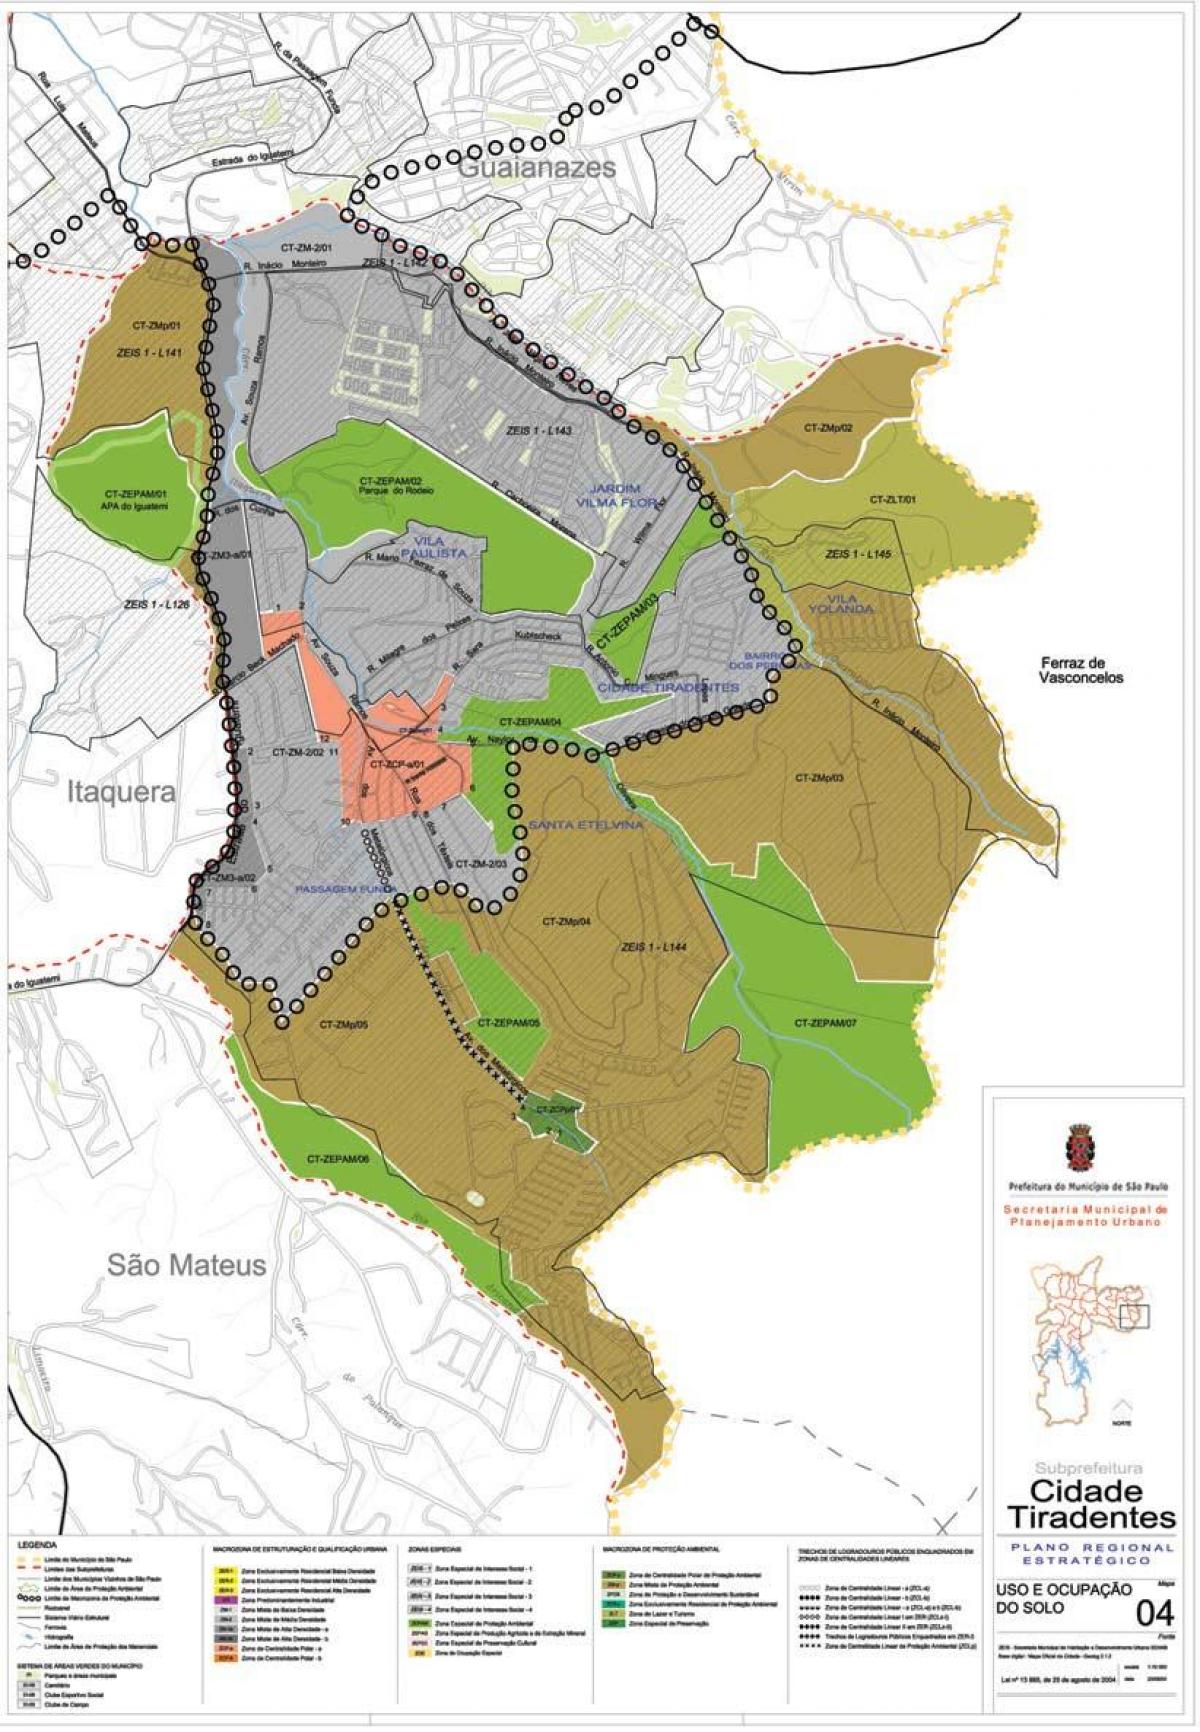 Карта Сидаде Тирадентесе Сан-Паулу - захват земли